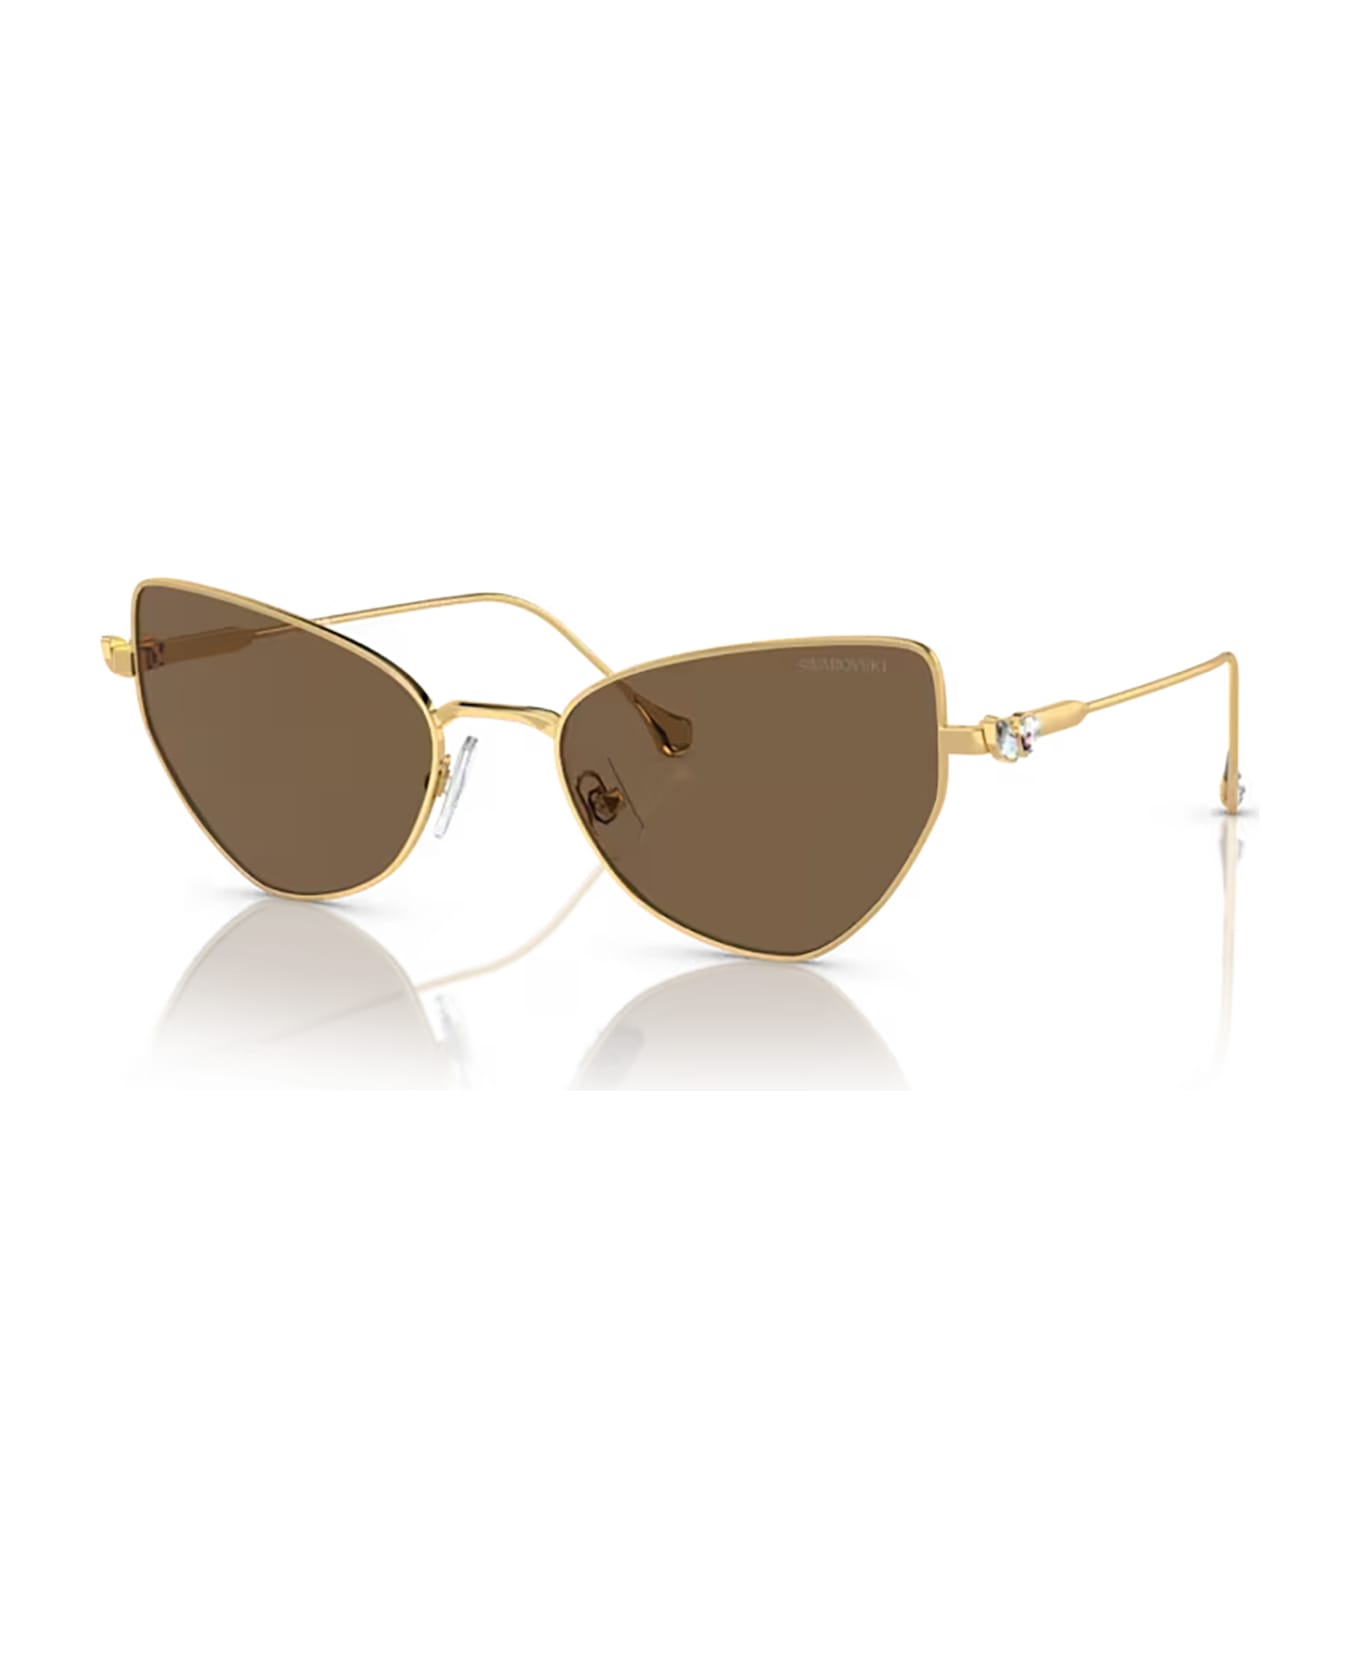 Swarovski Sk7011 Gold Sunglasses - Gold